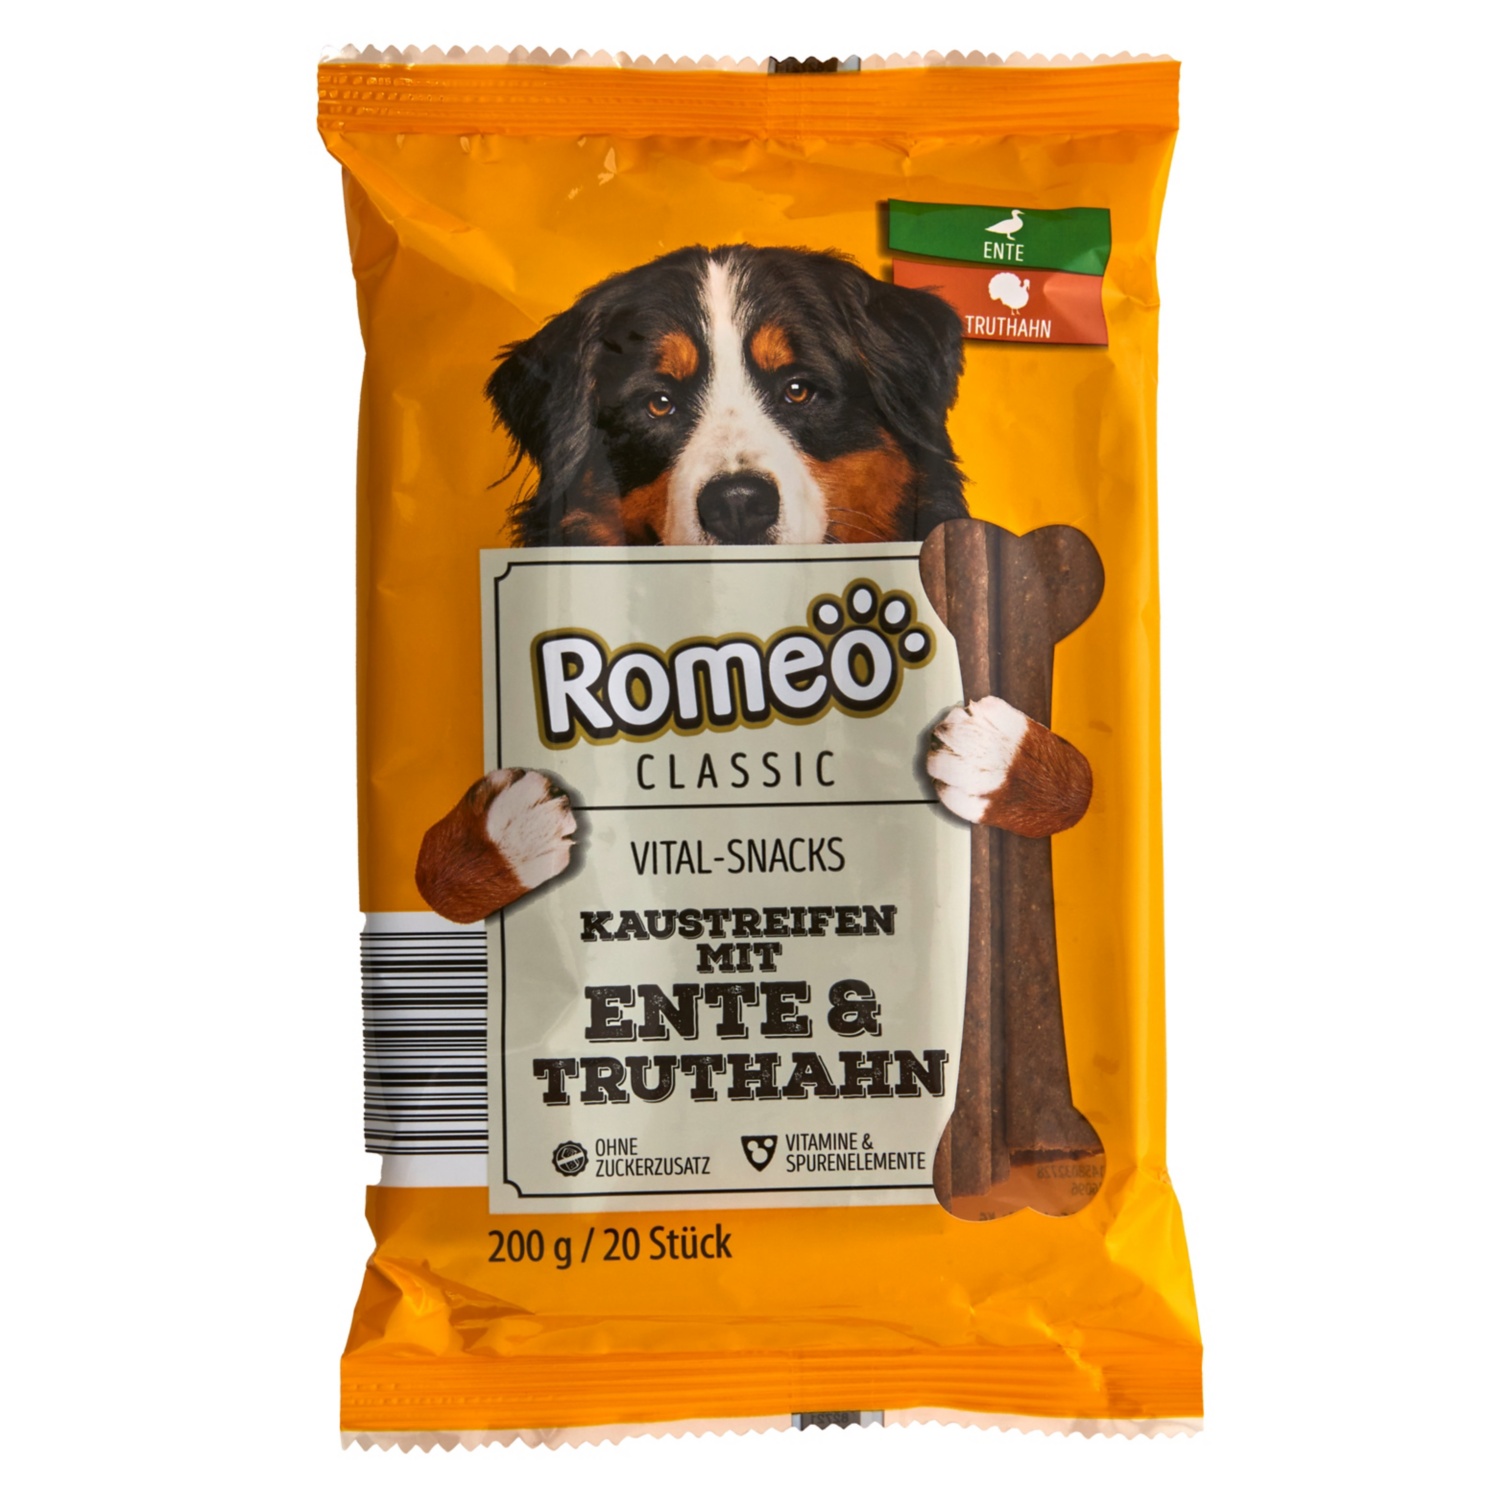 Romeo Vital-Snacks 200 g